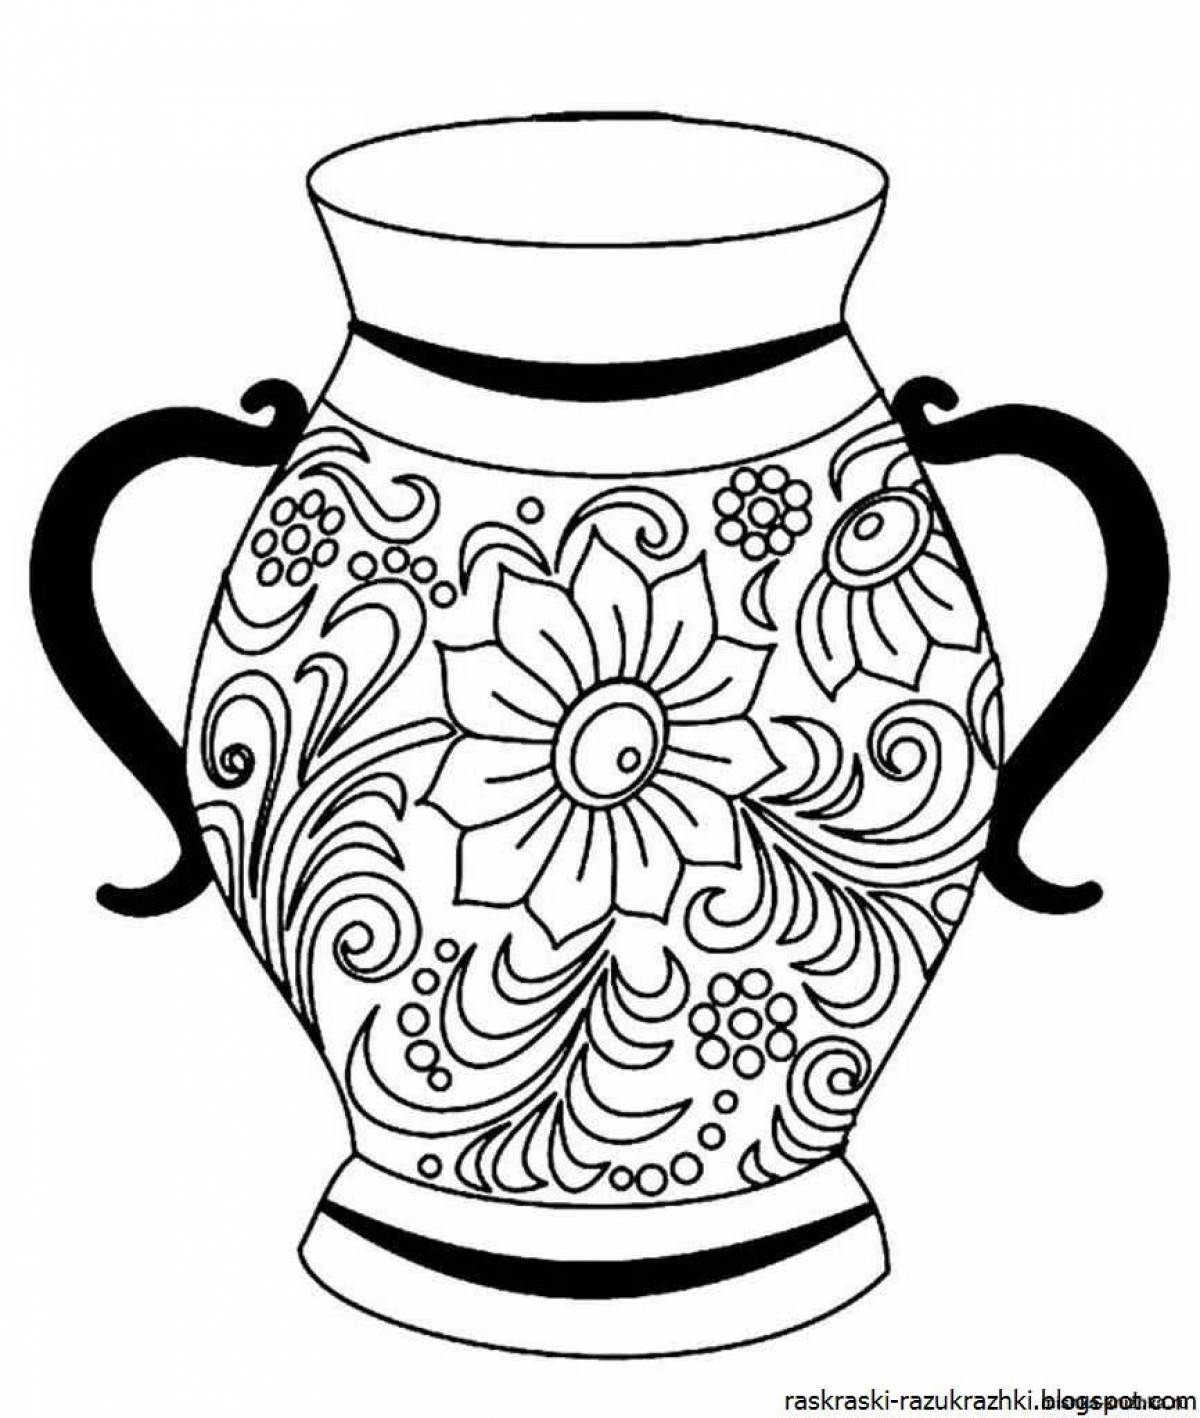 Coloring shiny jug